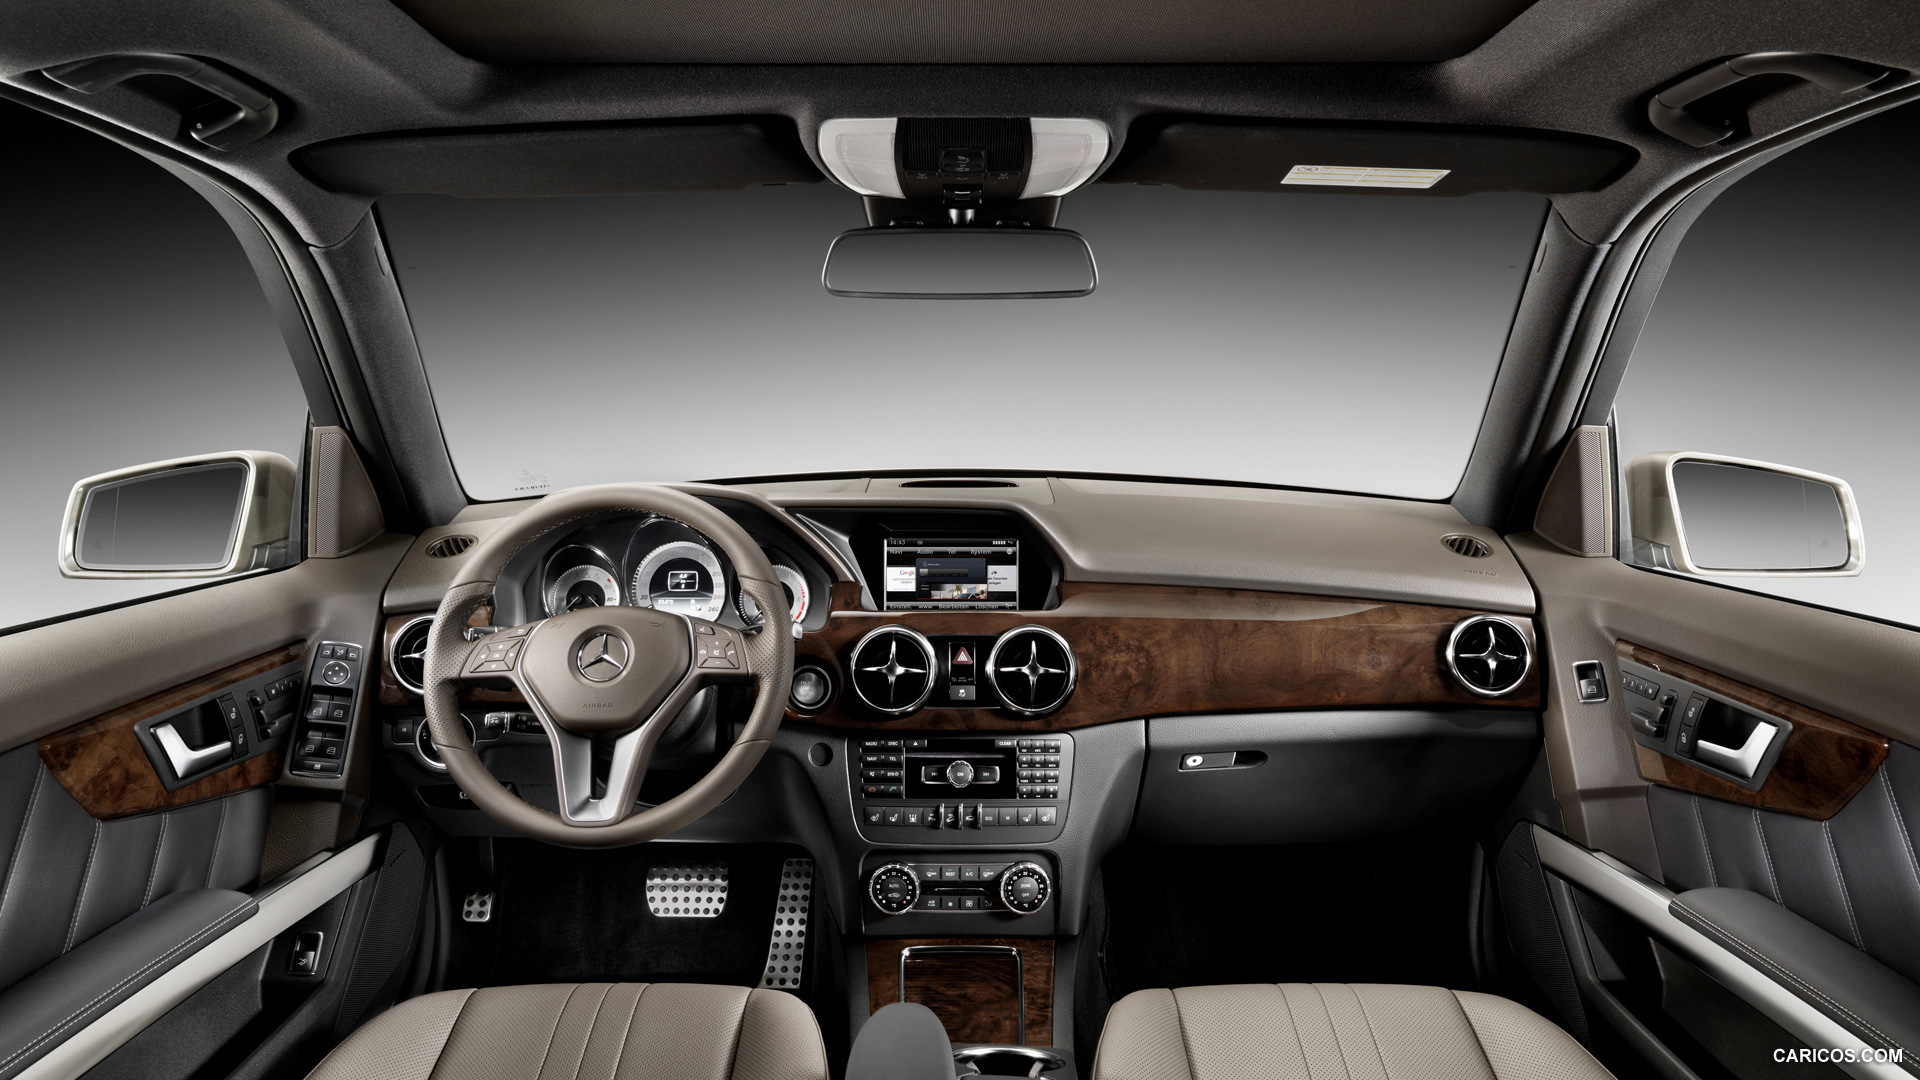 Mercedes-Benz GLK-Class (2013) GLK 250 BlueTEC 4MATIC - Interior, #30 of 109